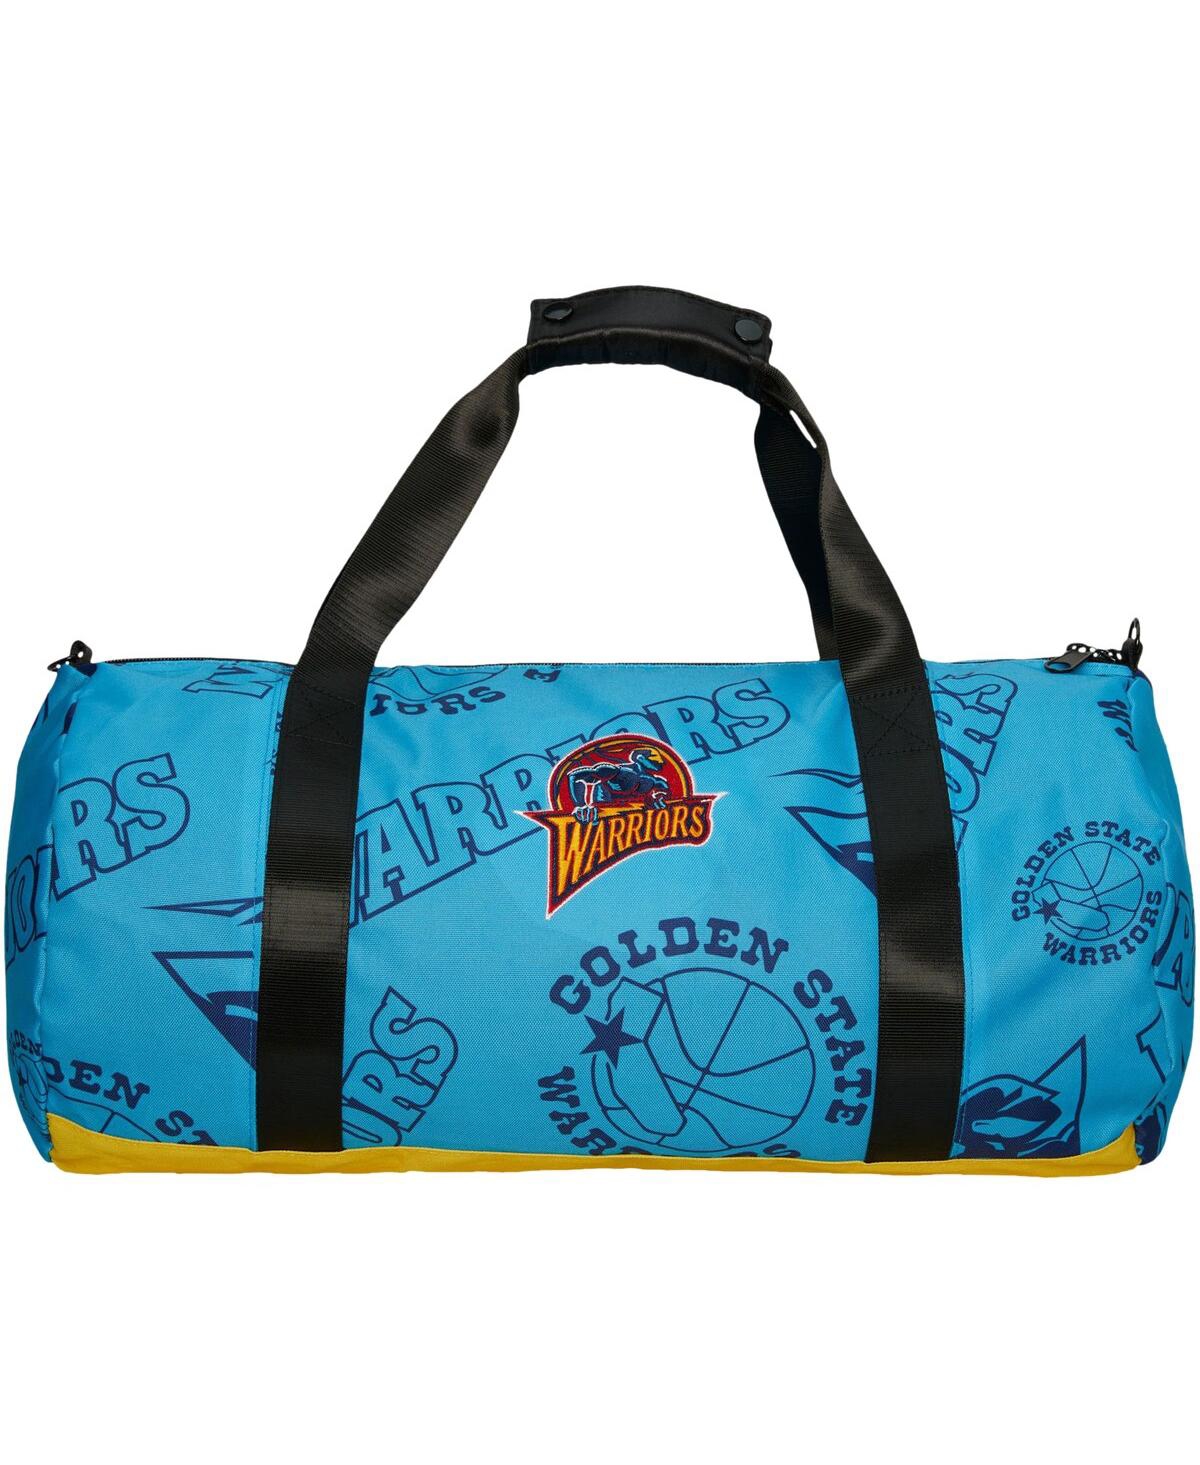 Men's and Women's Mitchell & Ness Golden State Warriors Team Logo Duffle Bag - Blue